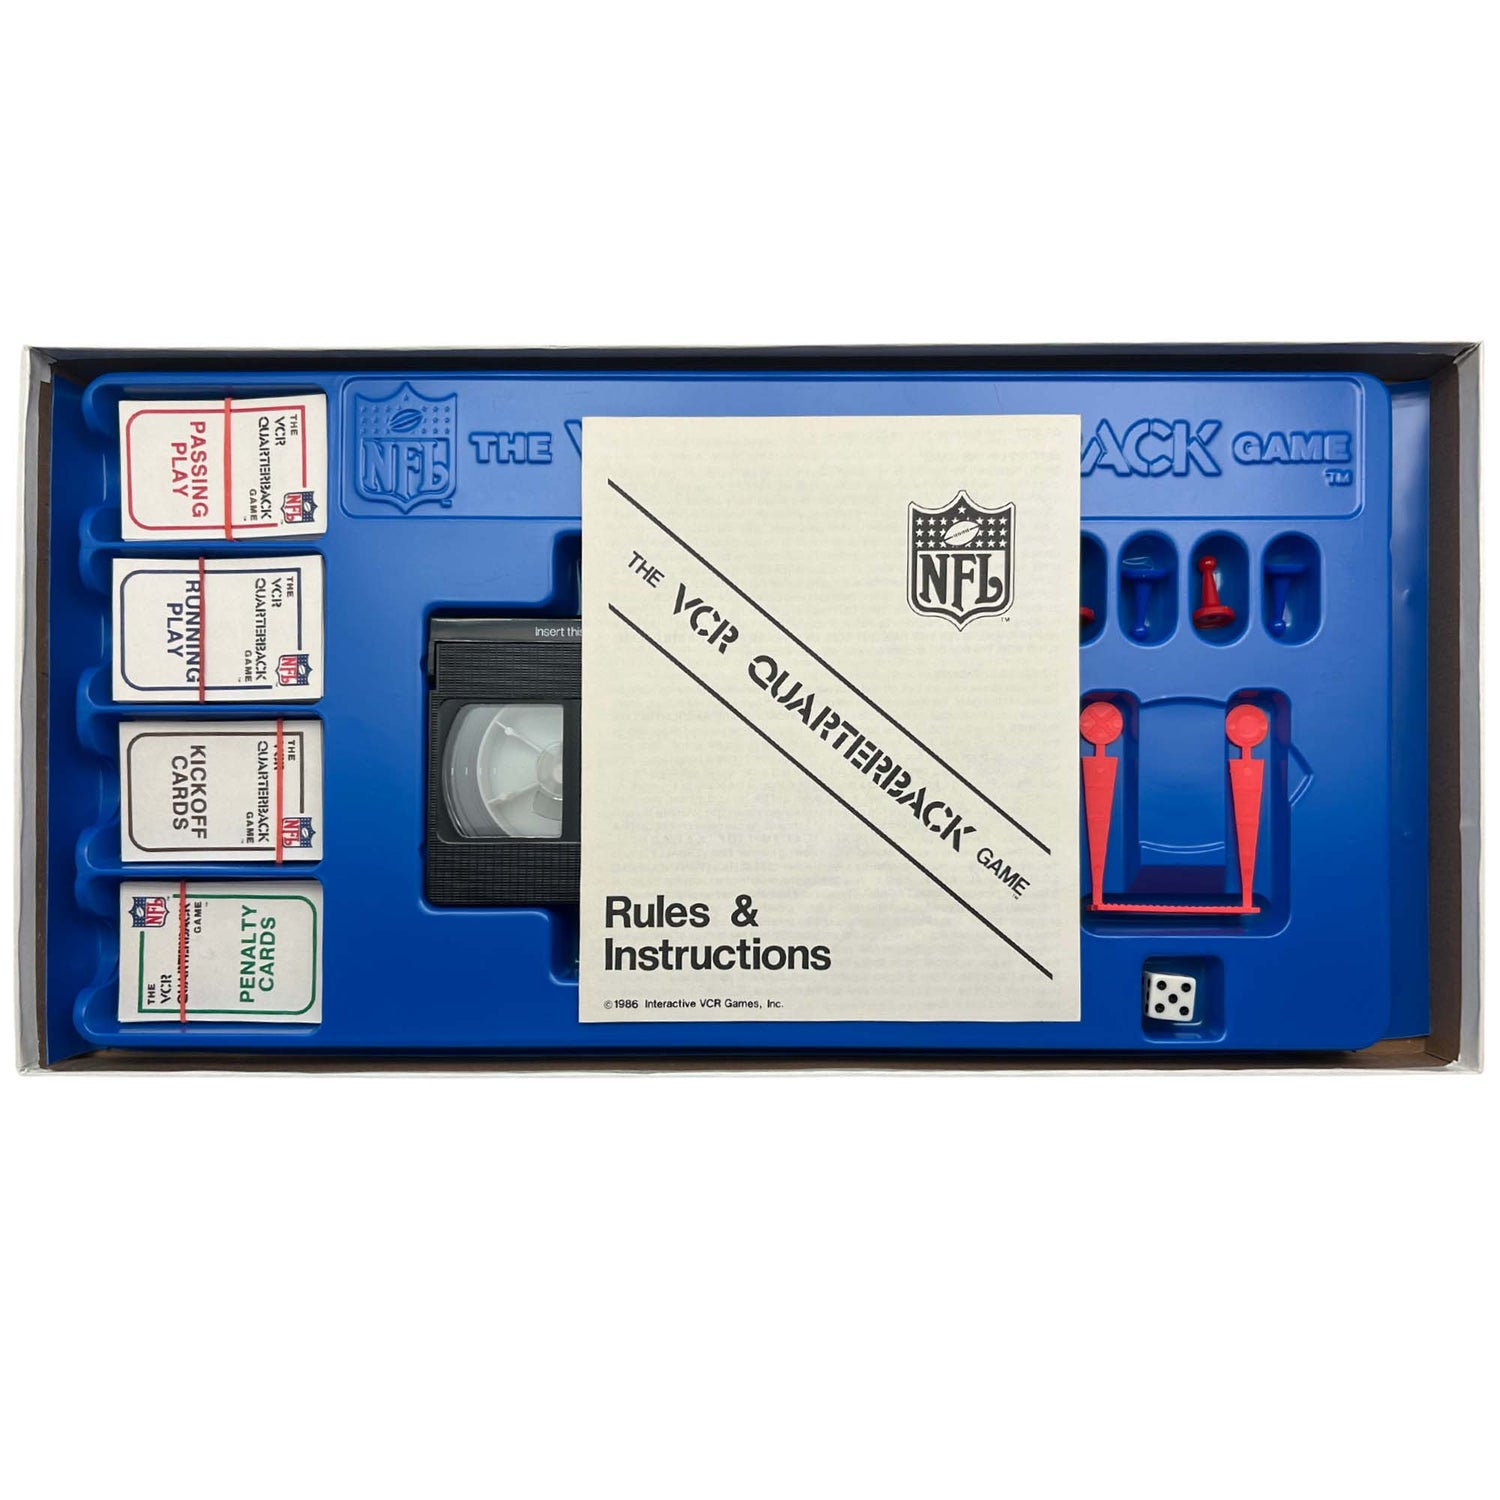 The VCR Quarterback Board Game Manual